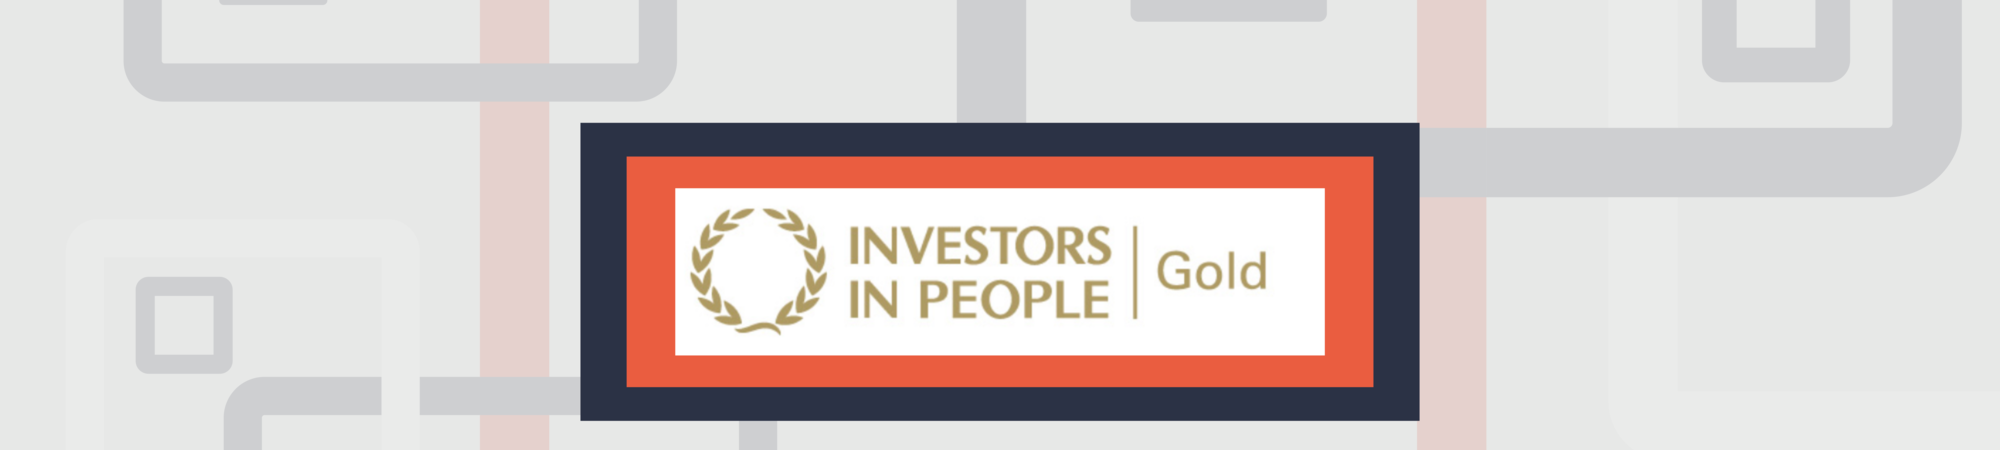 Investors Website